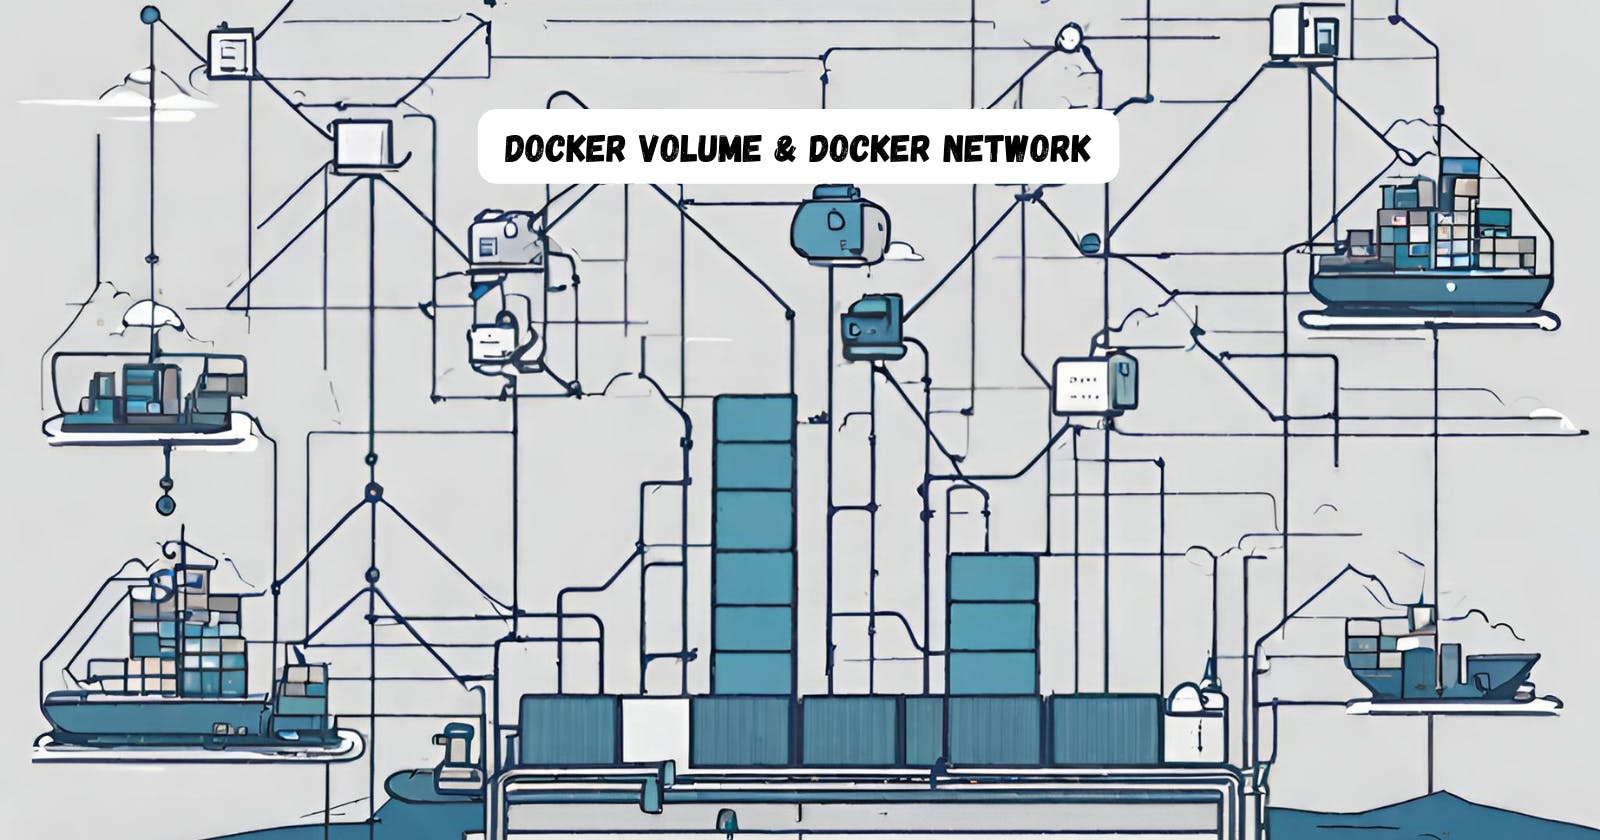 🚢Day 19 - Exploring Docker Volume & Docker Network